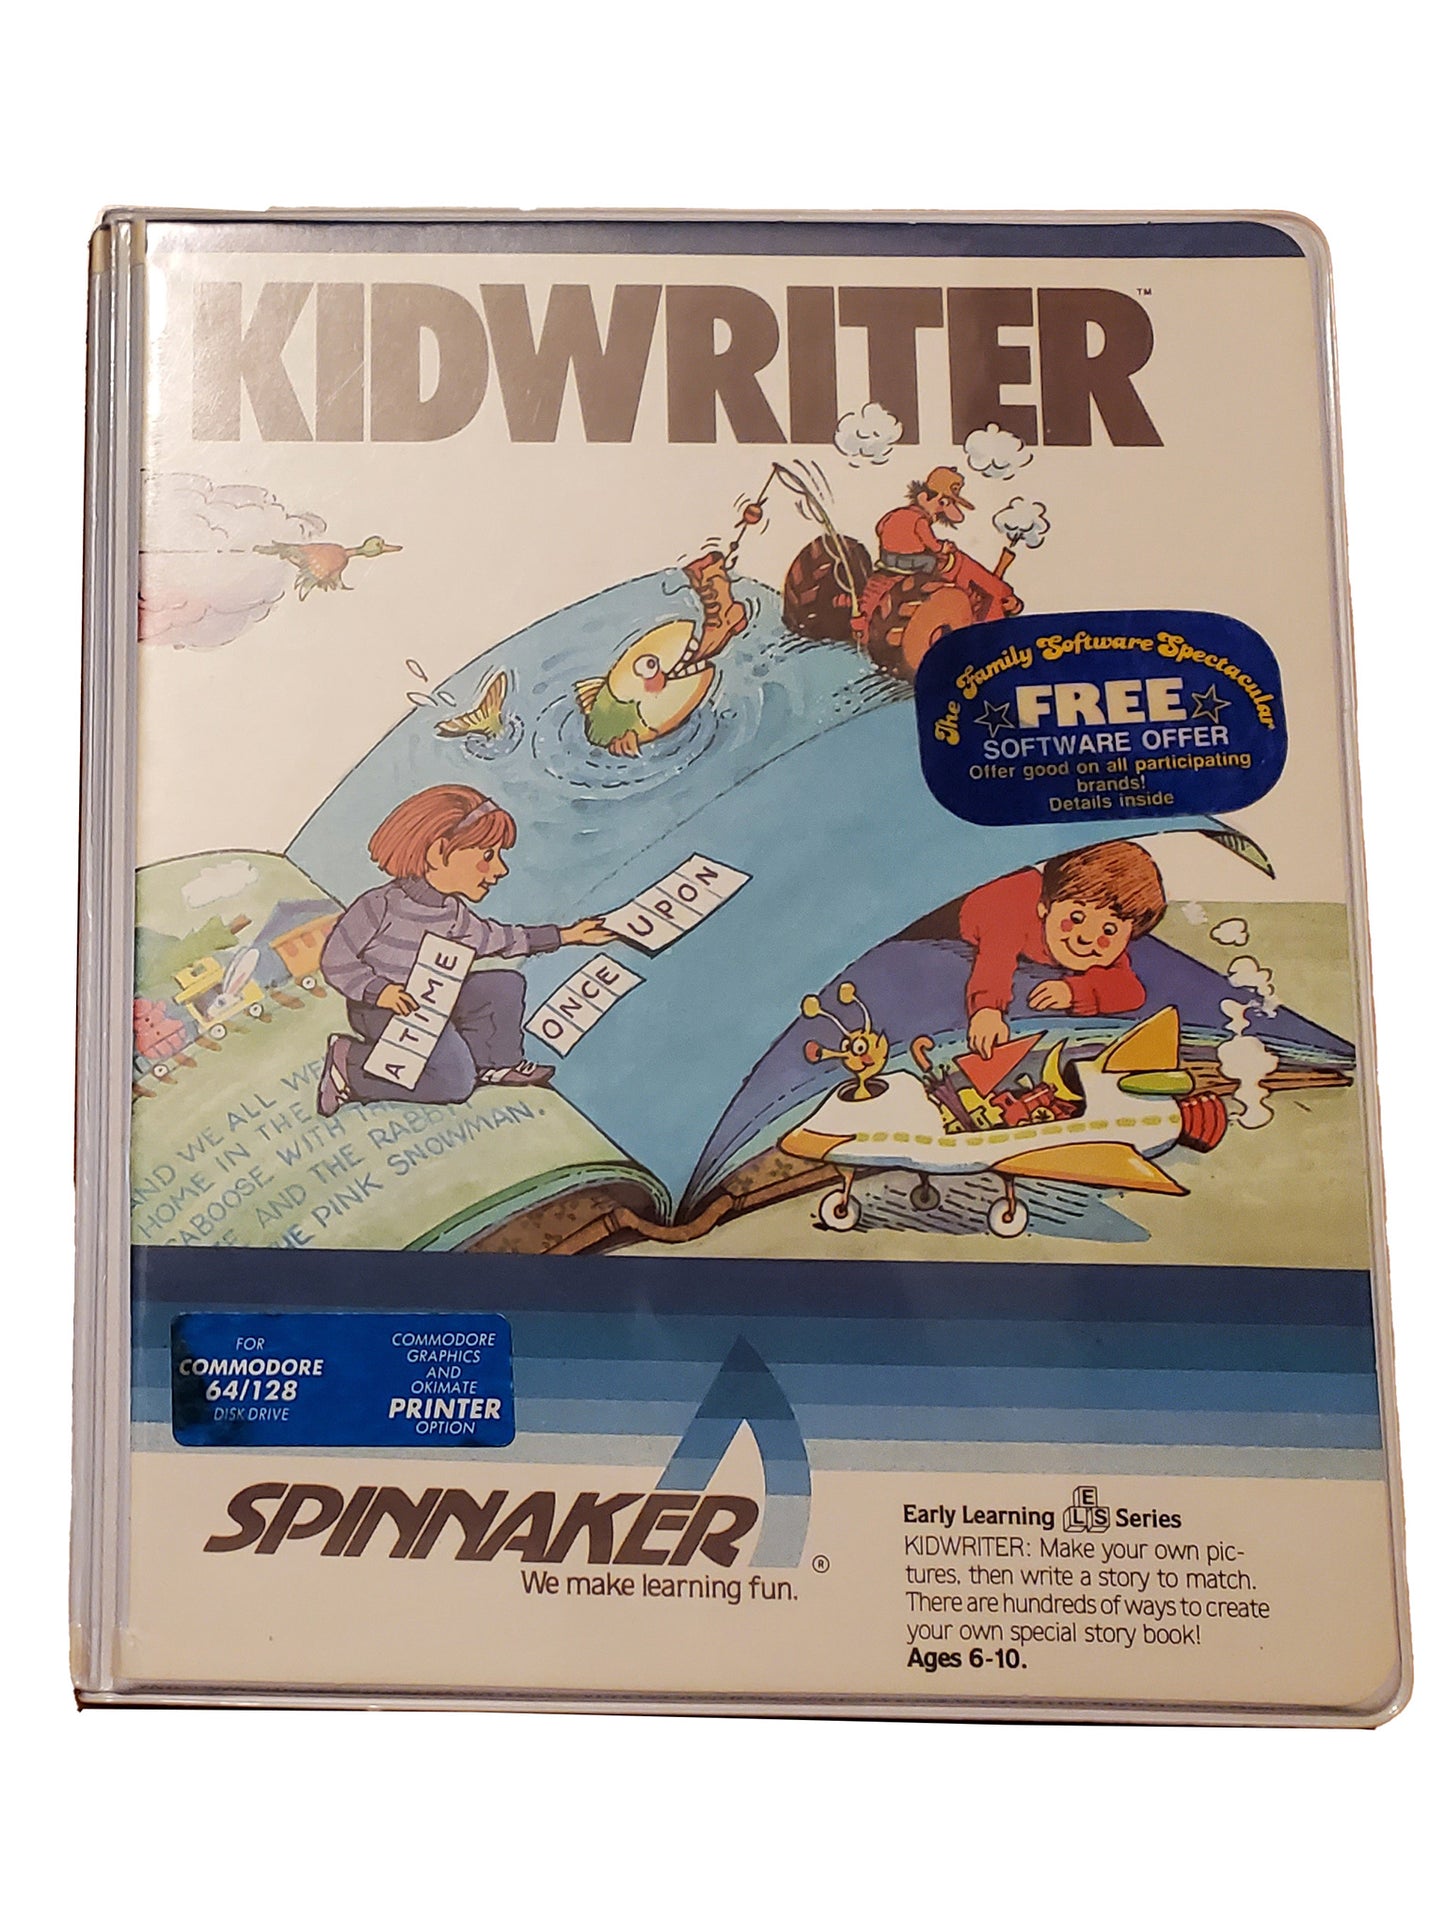 Kidwriter Cartridge in Box